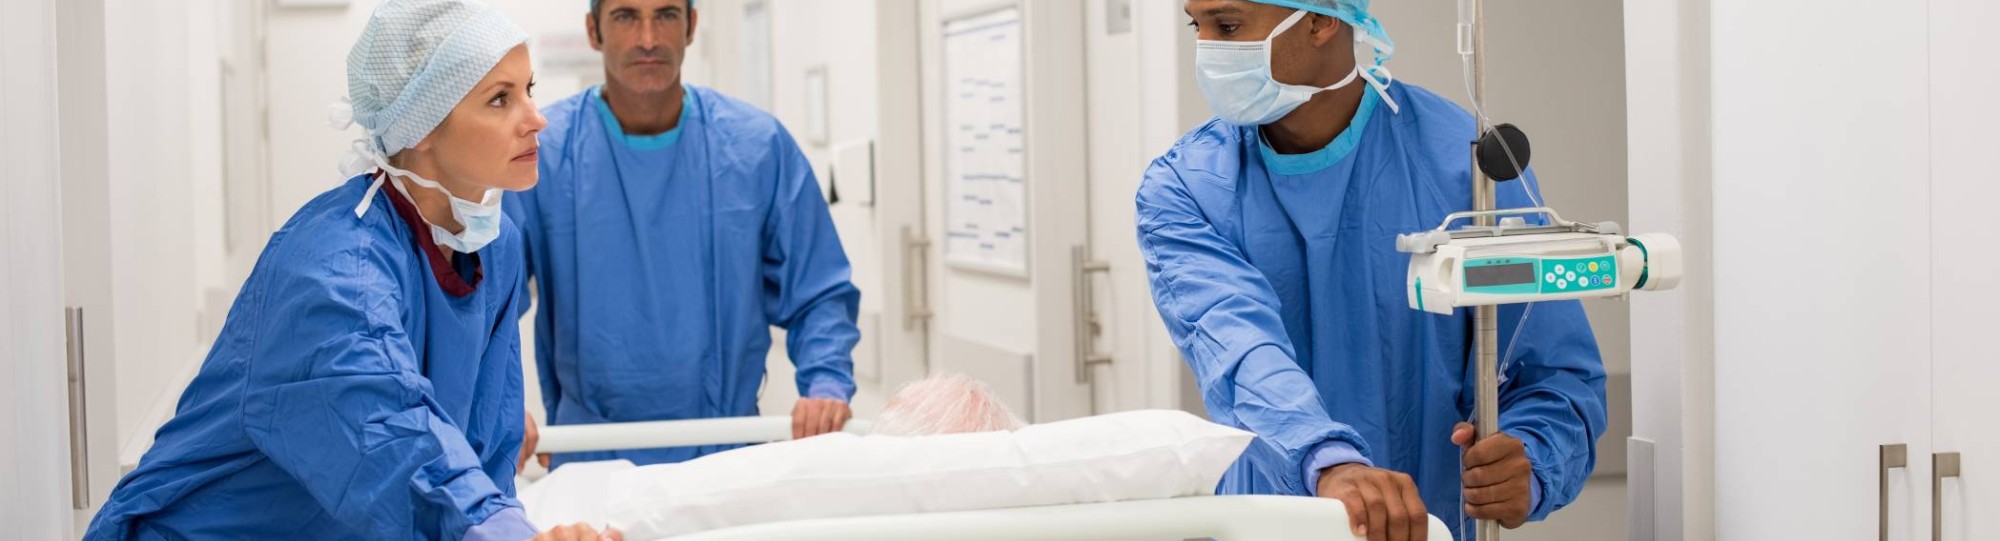 Ziekenhuispersoneel in ziekenhuis duwen een bed met patient